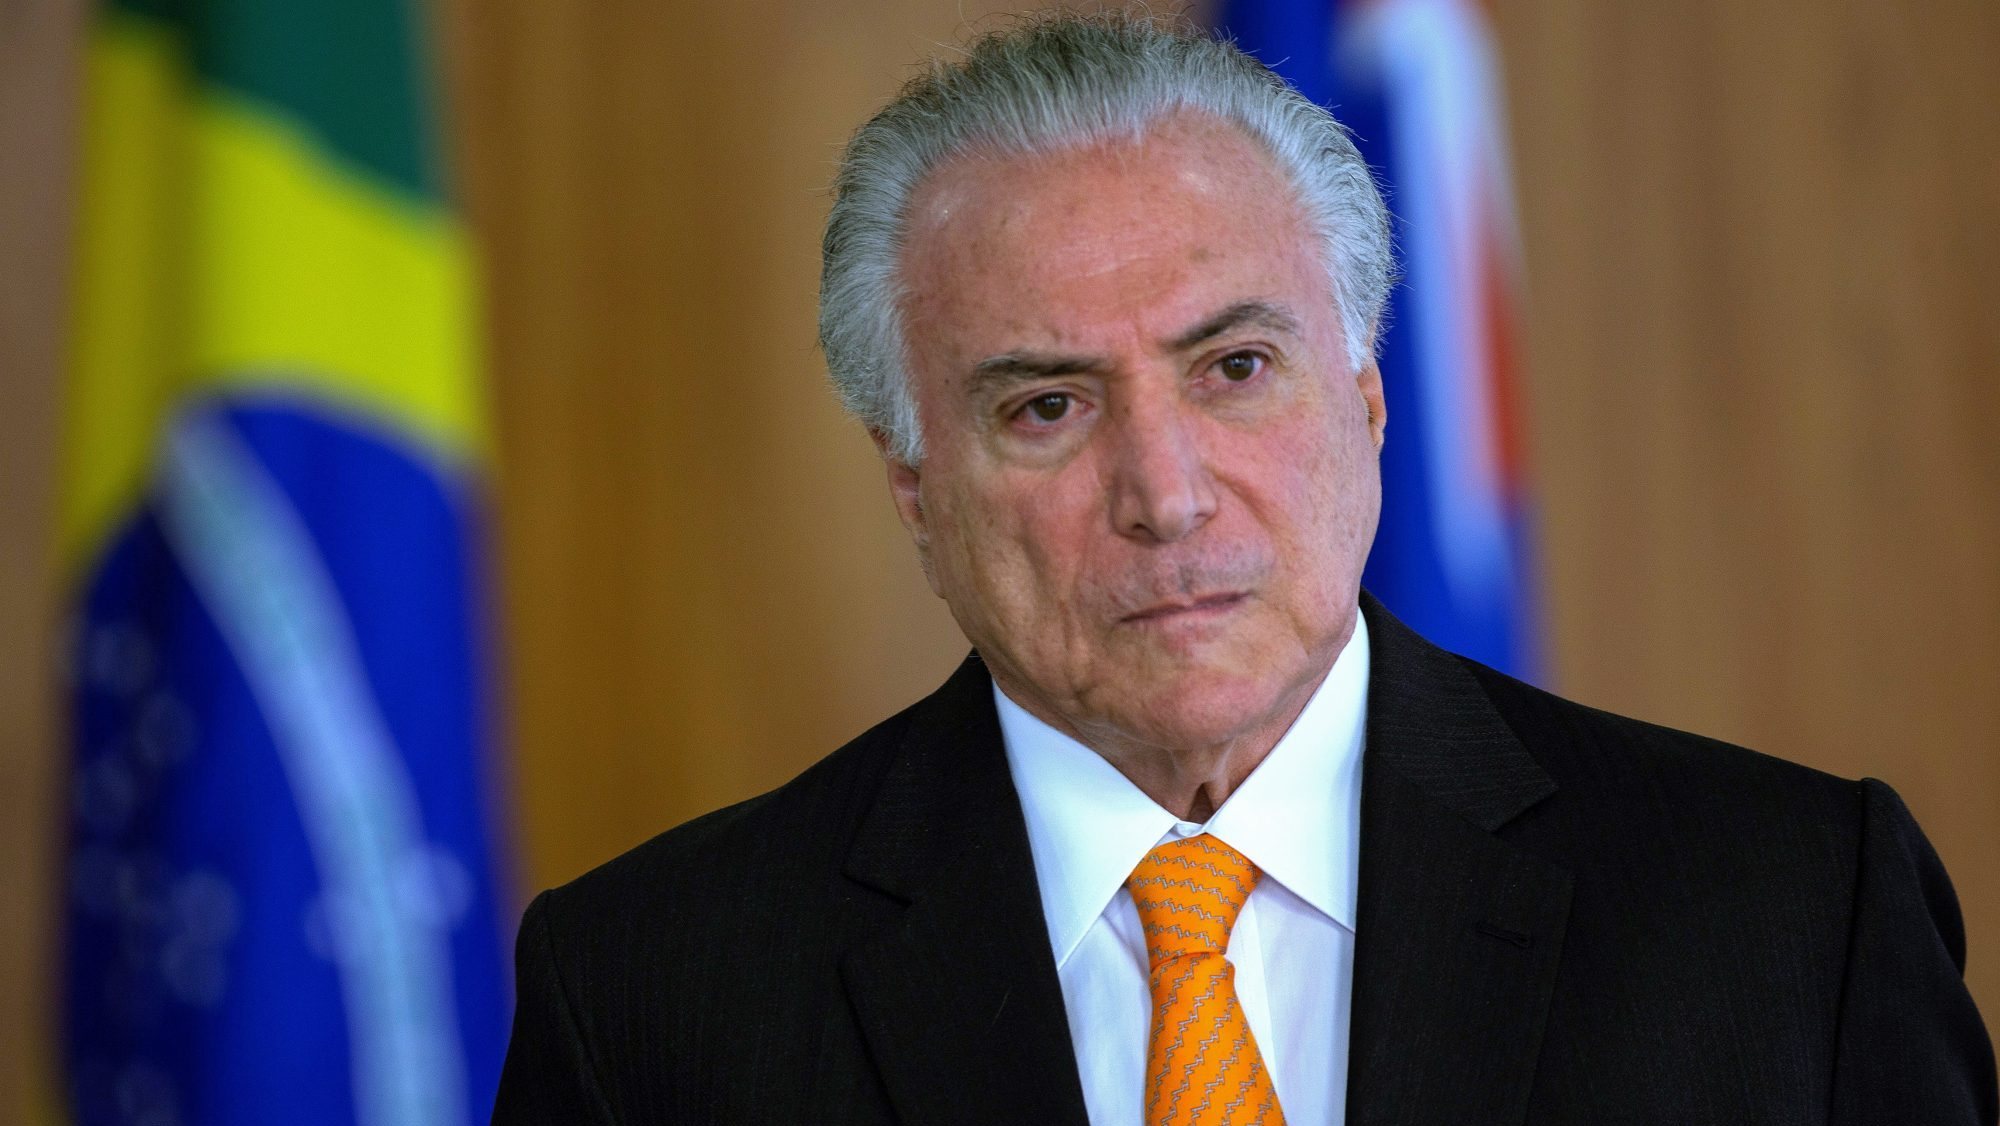 O Presidente da República português recebeu, na terça-feira em audiência, no Palácio de Belém, o antigo chefe de Estado do Brasil, Michel Temer